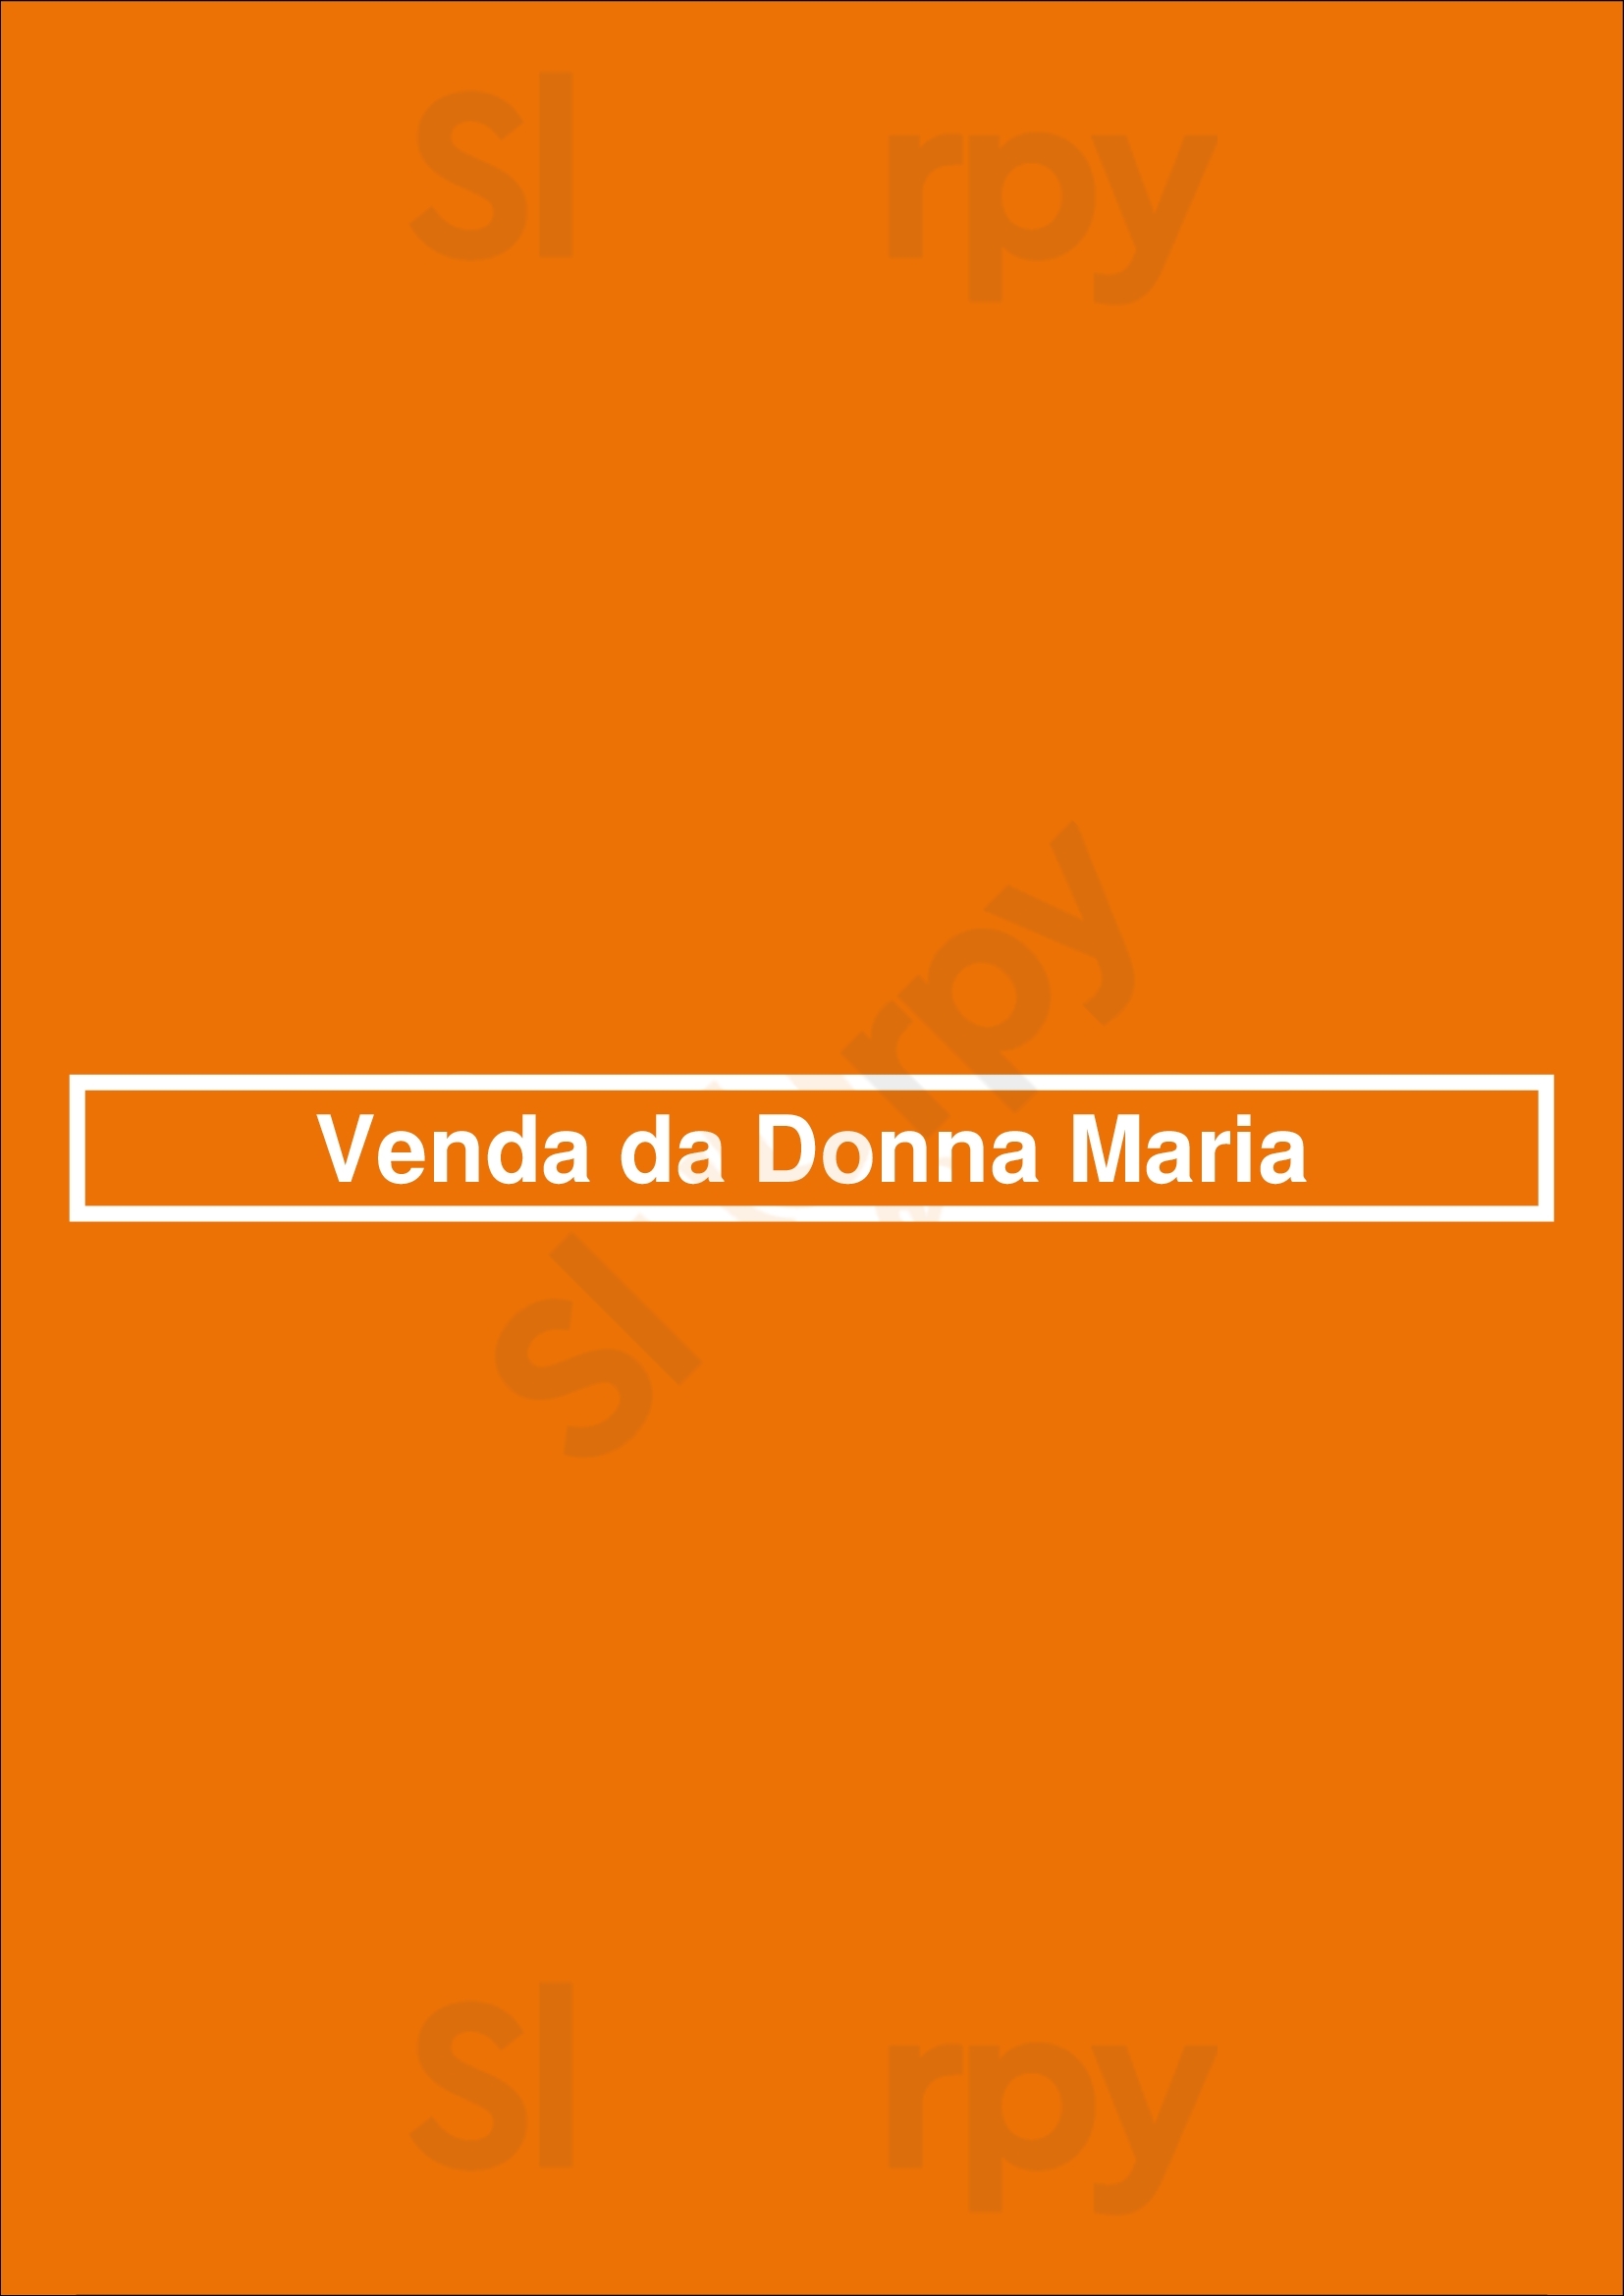 Venda Da Donna Maria Funchal Menu - 1